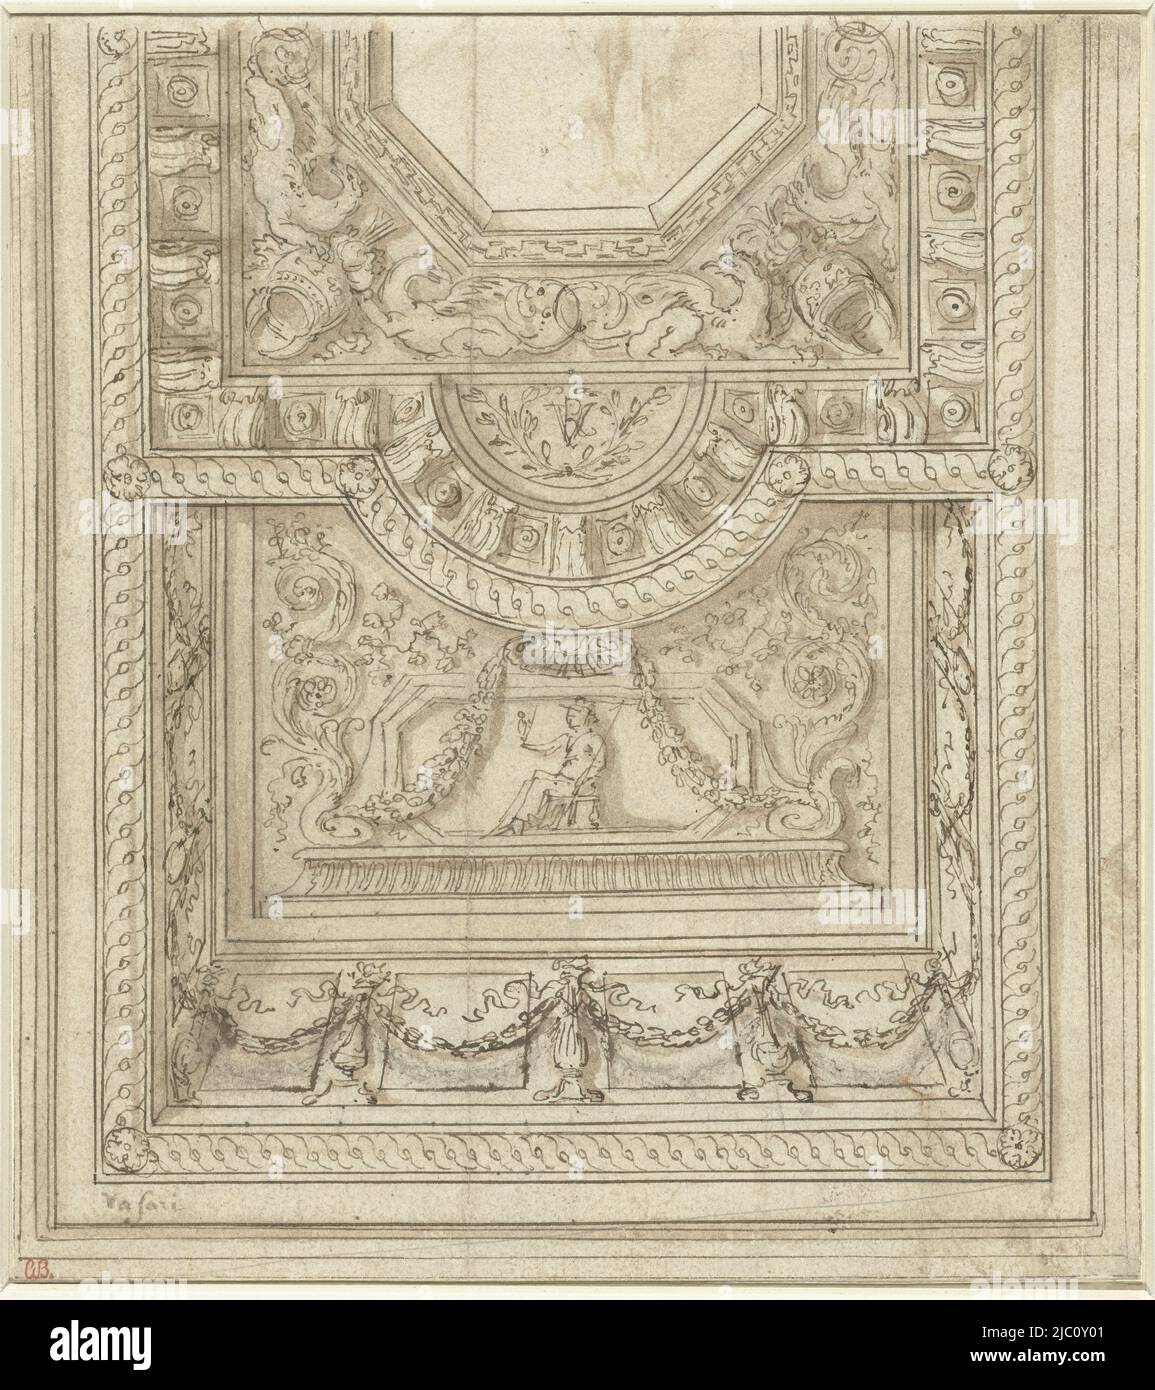 Deckengestaltung, Zeichner: Giorgio Vasari, (möglicherweise), 1521 - 1574, Papier, Stift, Bürste, H 197 mm × B 178 mm Stockfoto